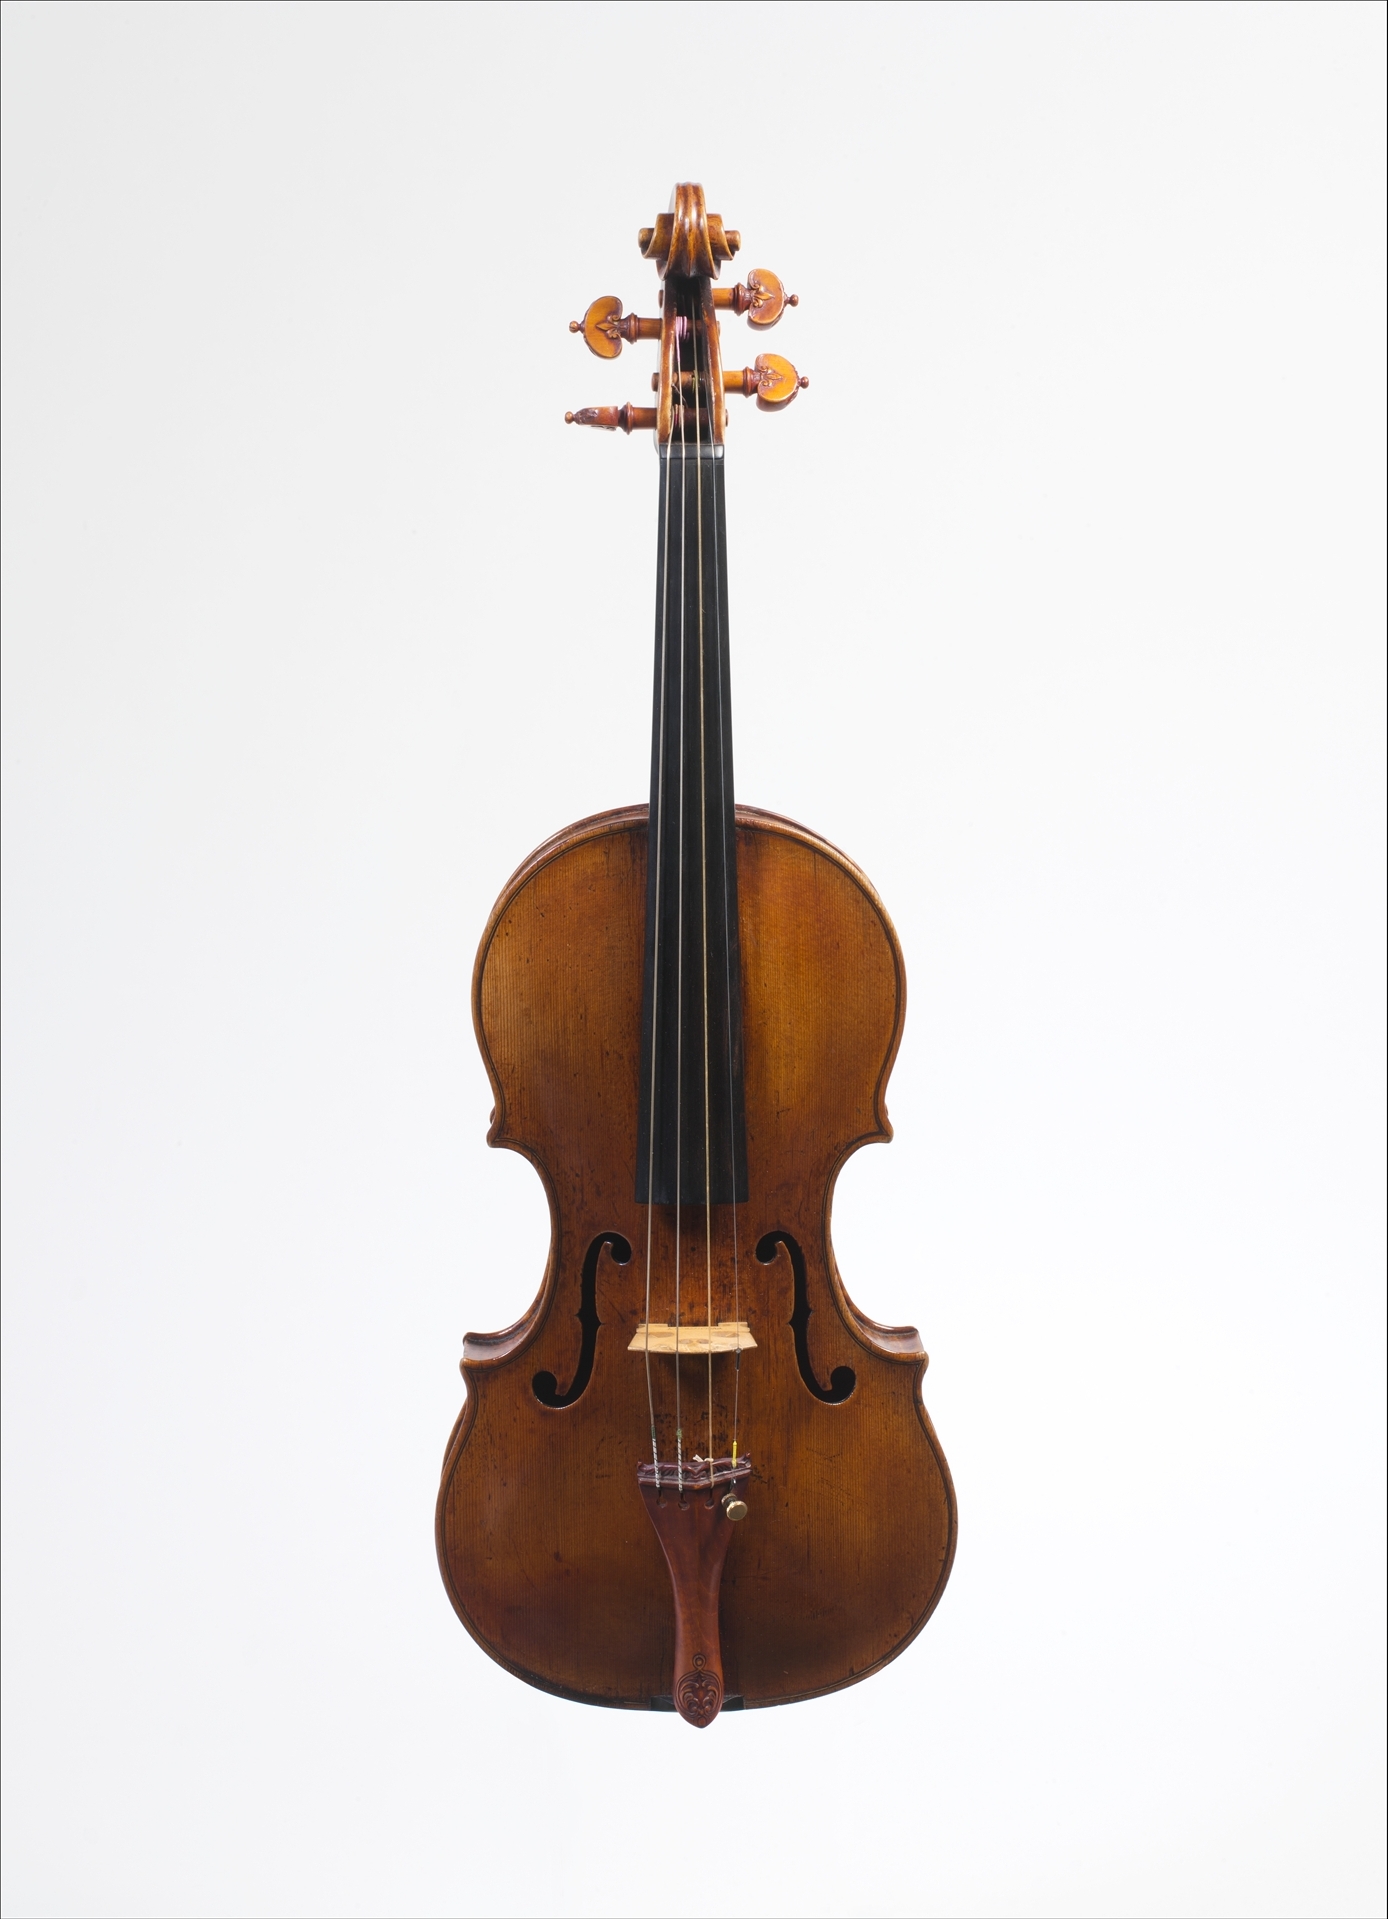 쿠르츠가 사용했던 바이올린(ex "Kurtz" Violin) by Andrea Amati - 1560년경 - 57.4 x 20.2 cm 